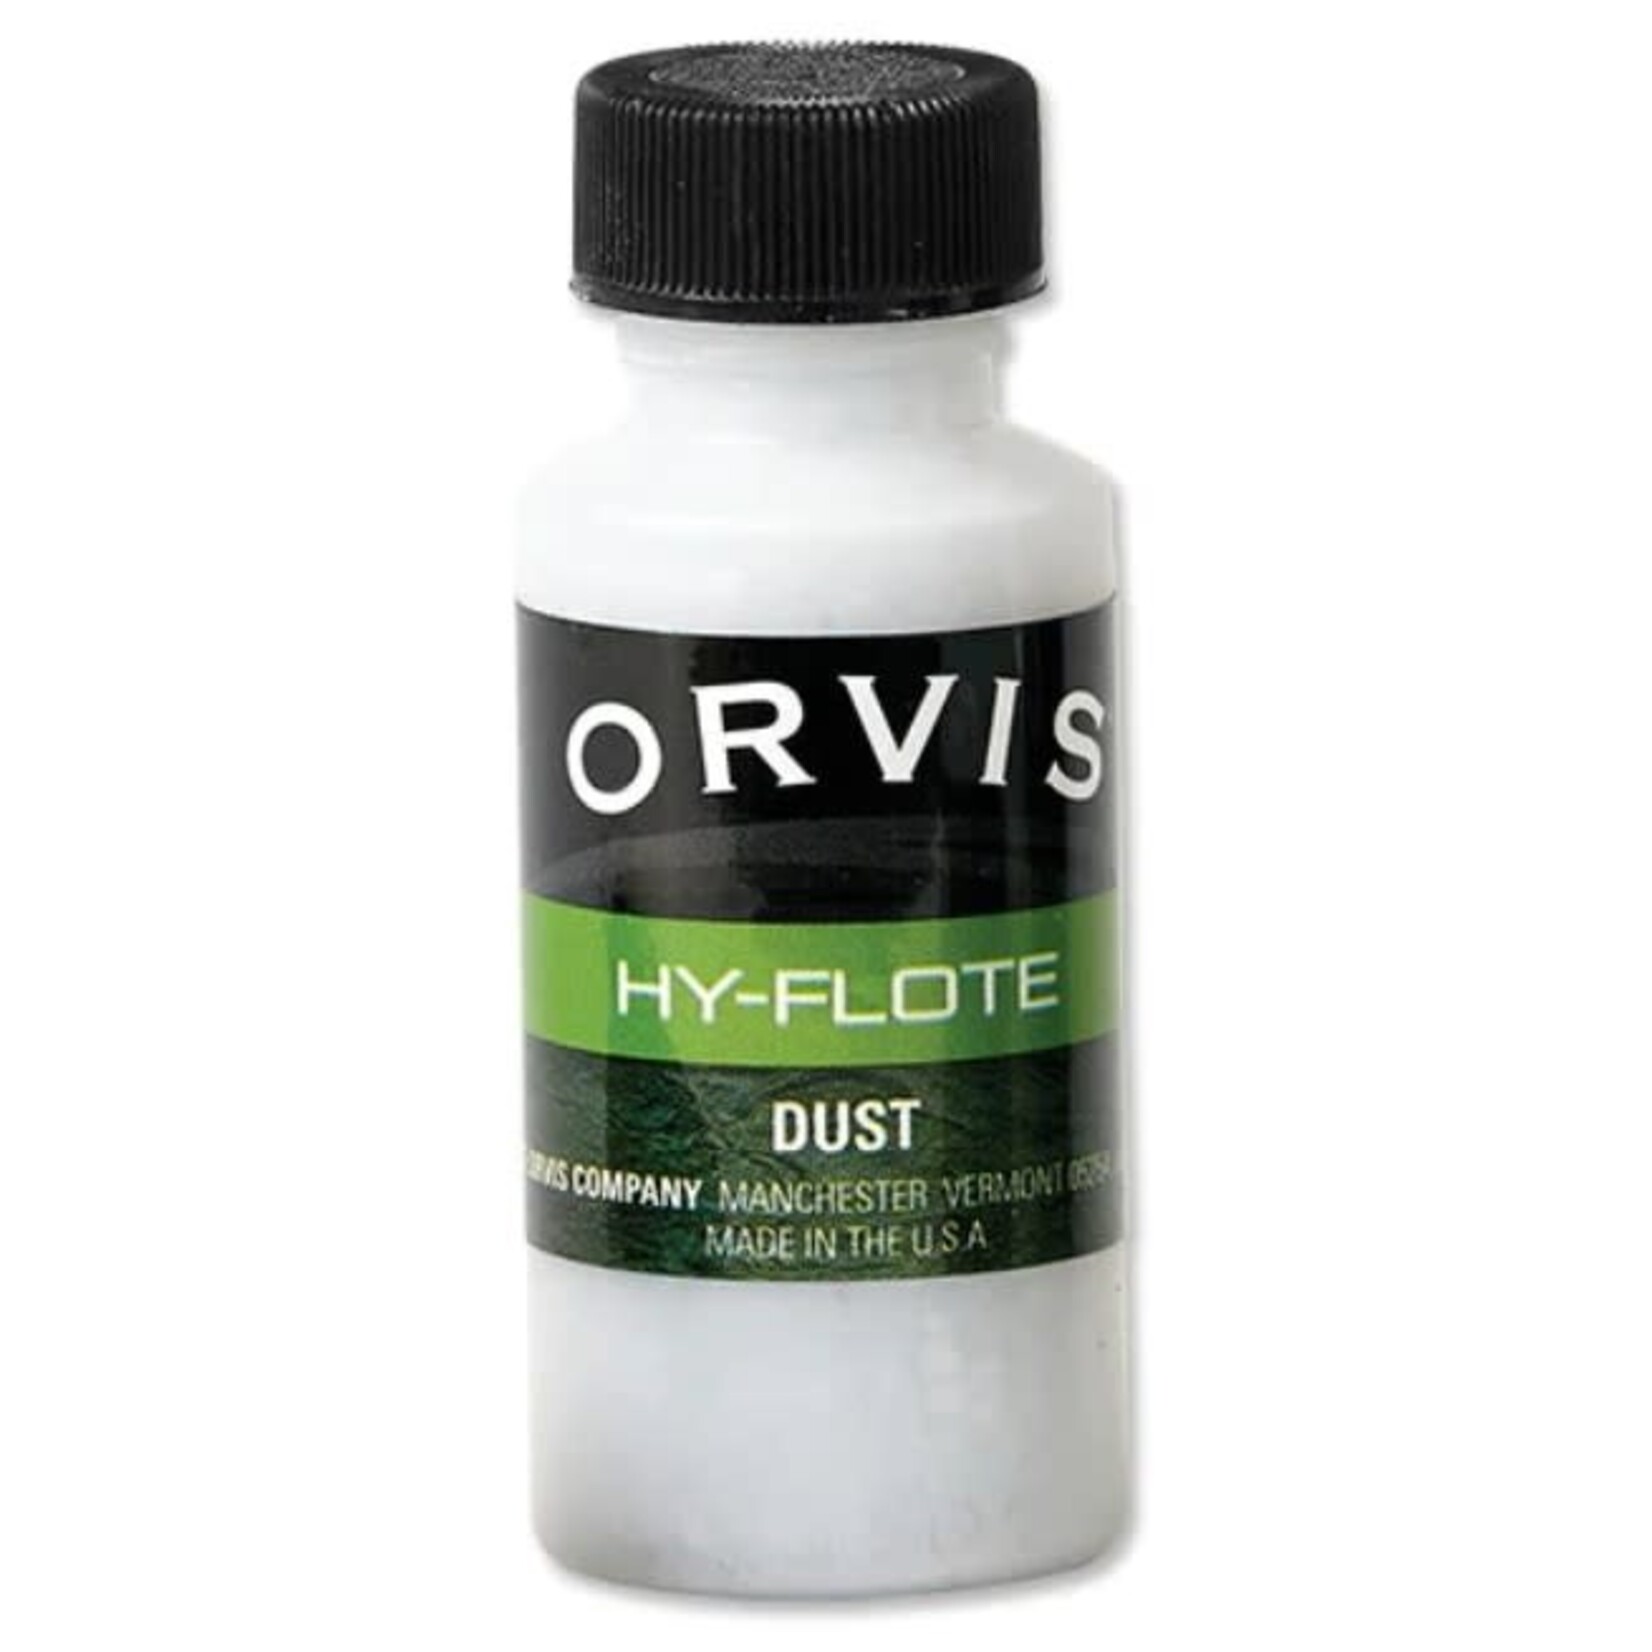 ORVIS Orvis Hy-Flote Powder Dust w/ Brush